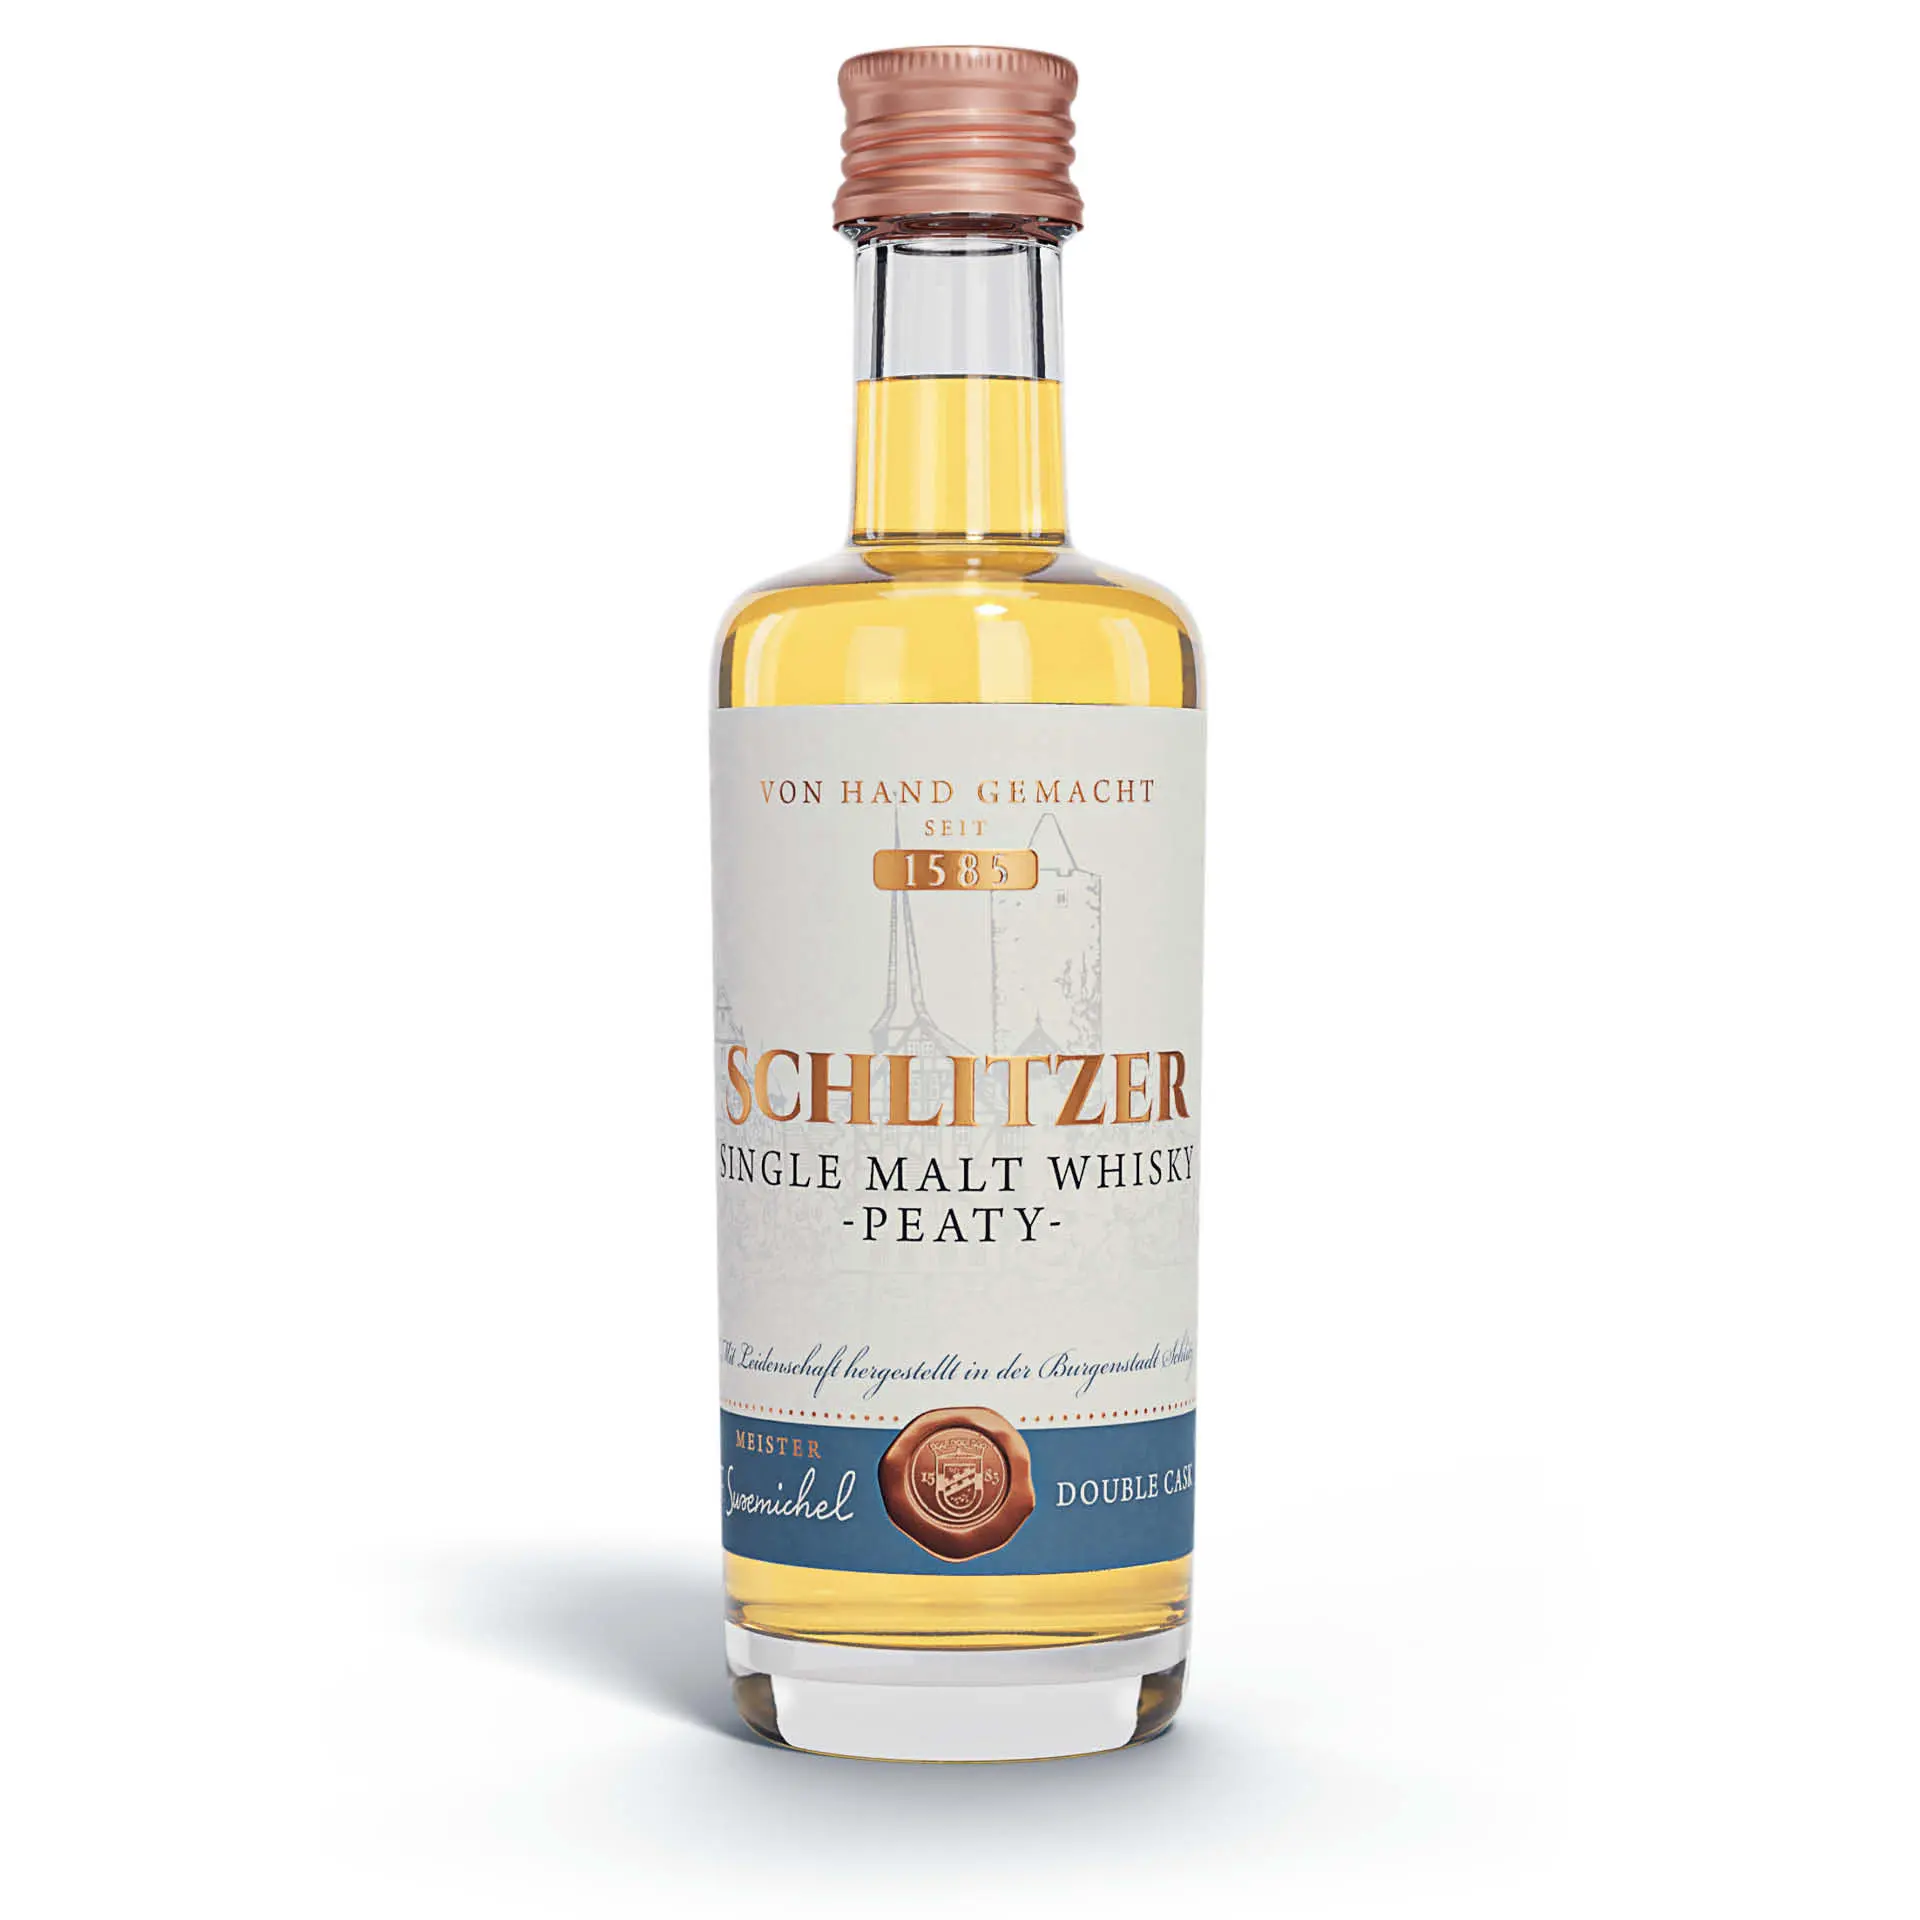 Single Malt Whisky peaty 49%vol. in einer 0,05 Liter Flasche mit Schraubverschluss